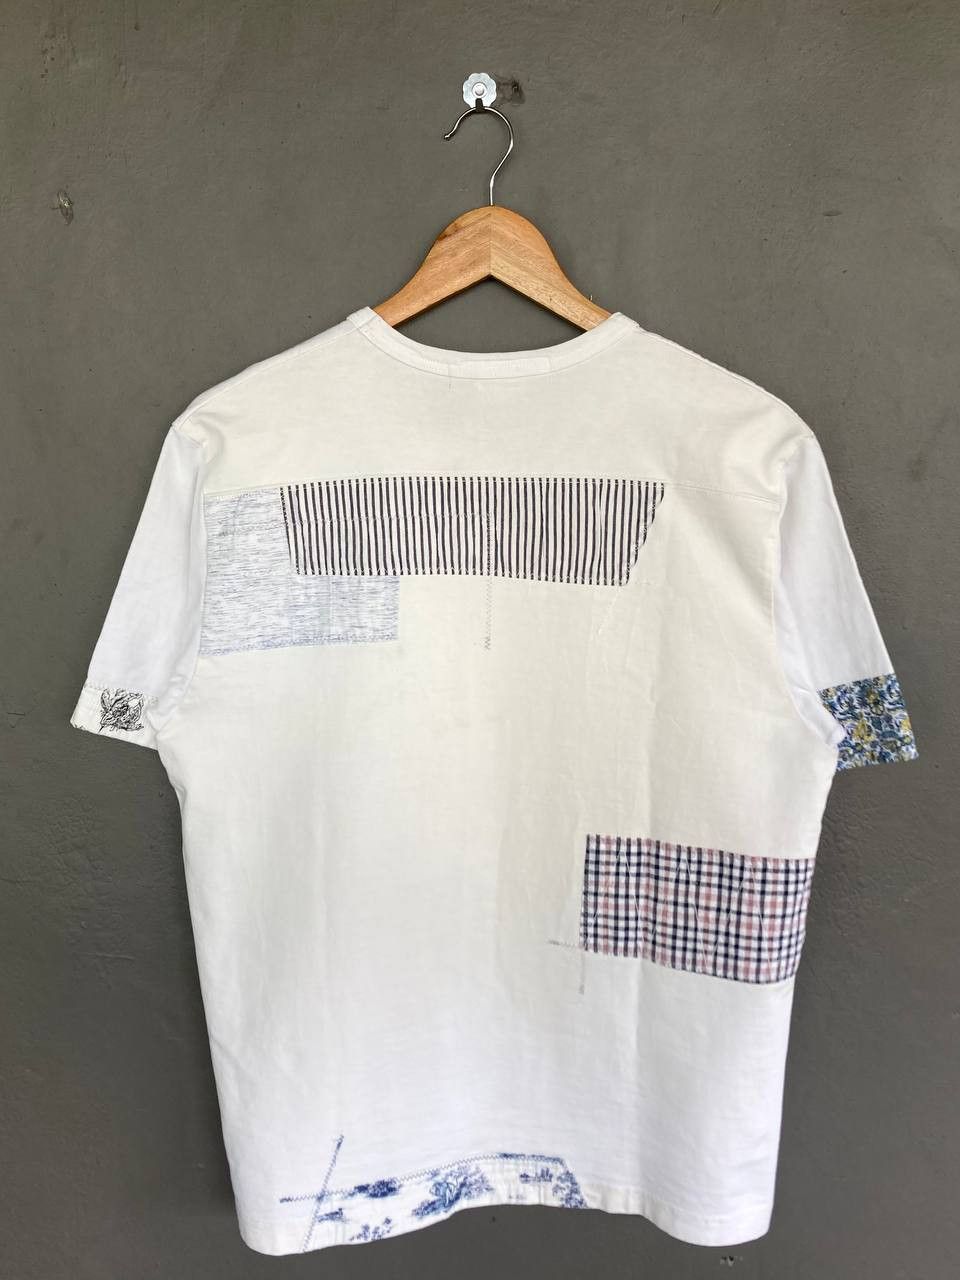 Comme des Garçons x Junya Watanabe SS20 Patchwork T-Shirt - 2